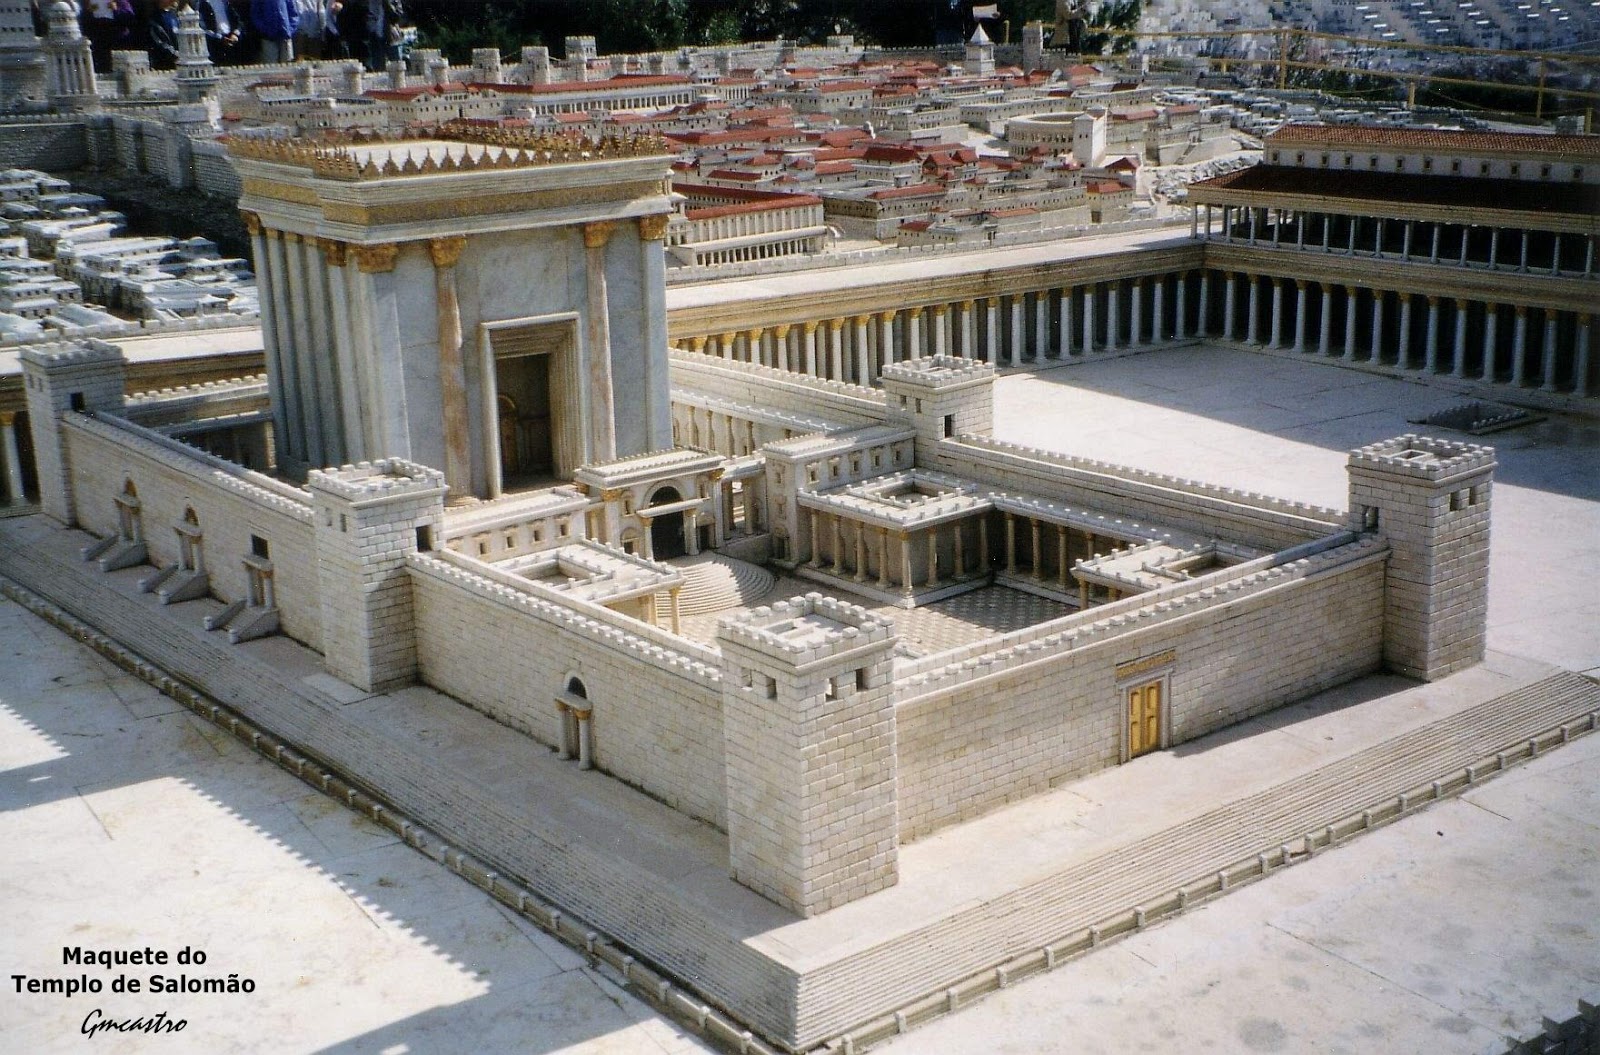 Maquete do templo de Salomão